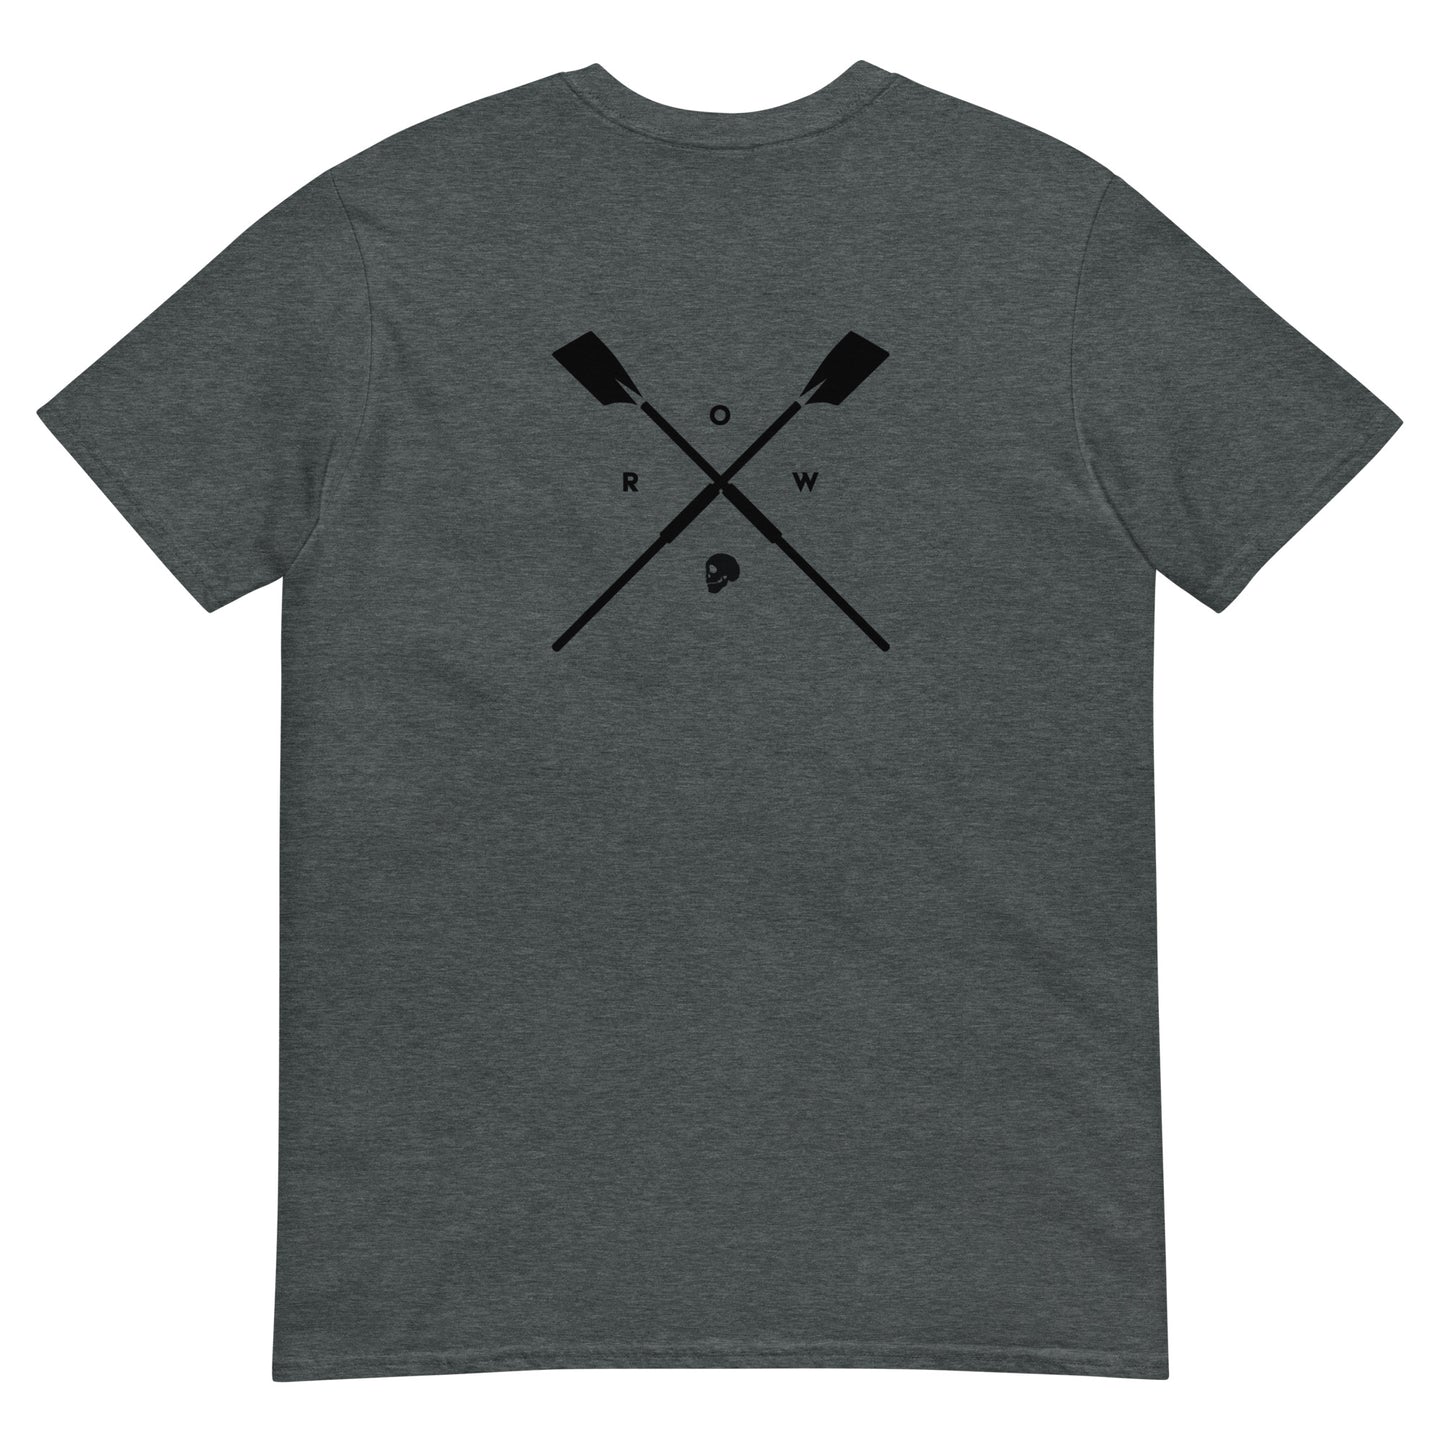 Cross Oar+Sign Short-Sleeve Unisex T-Shirt